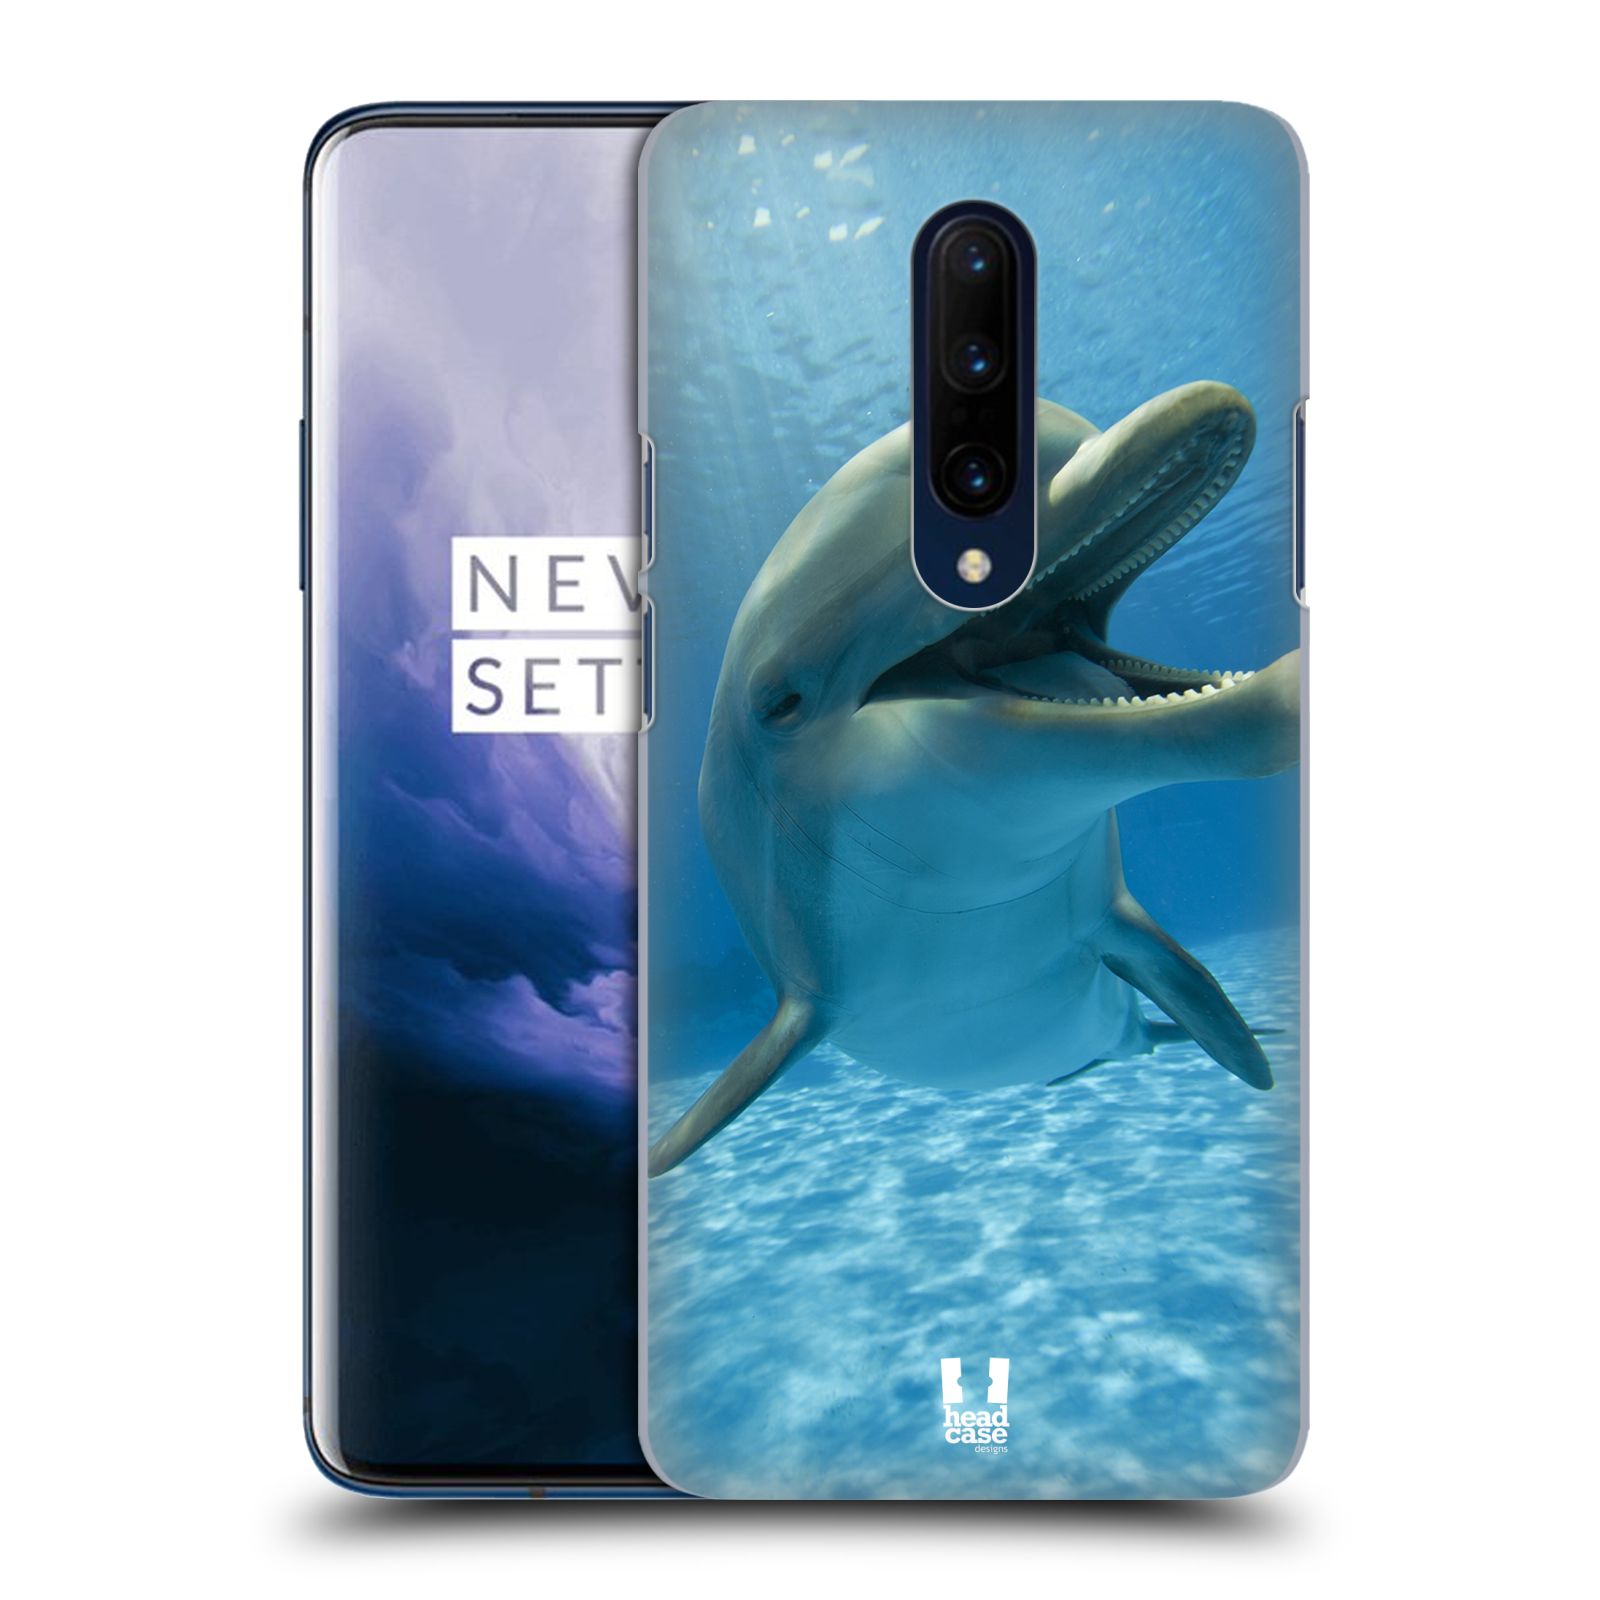 Zadní obal pro mobil OnePlus 7 PRO - HEAD CASE - Svět zvířat delfín v moři